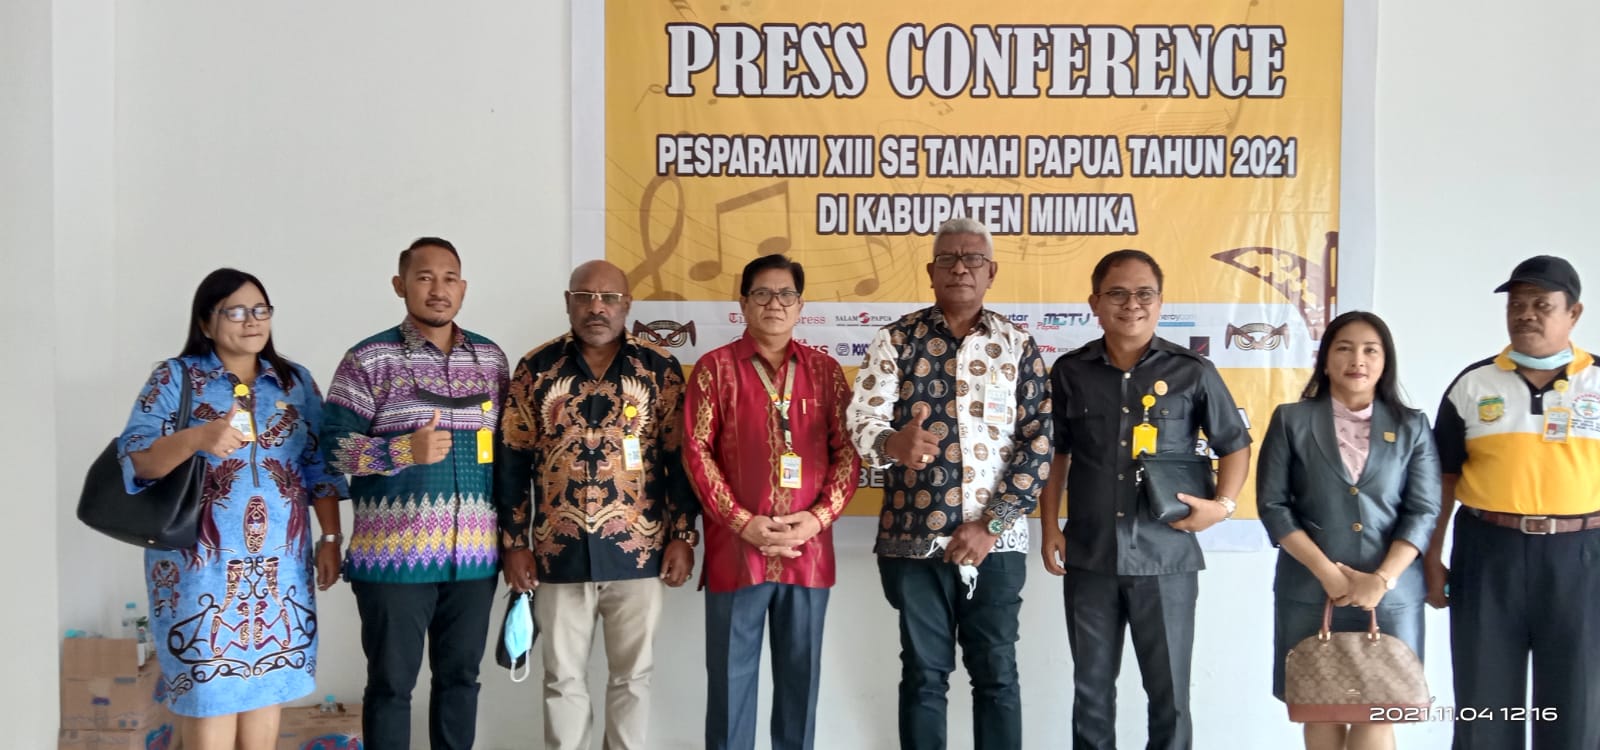 Ketum Pesparawi XIII se-Tanah Papua saat menerima kunjungan Pansus Pesparawi DPRD Mimika.